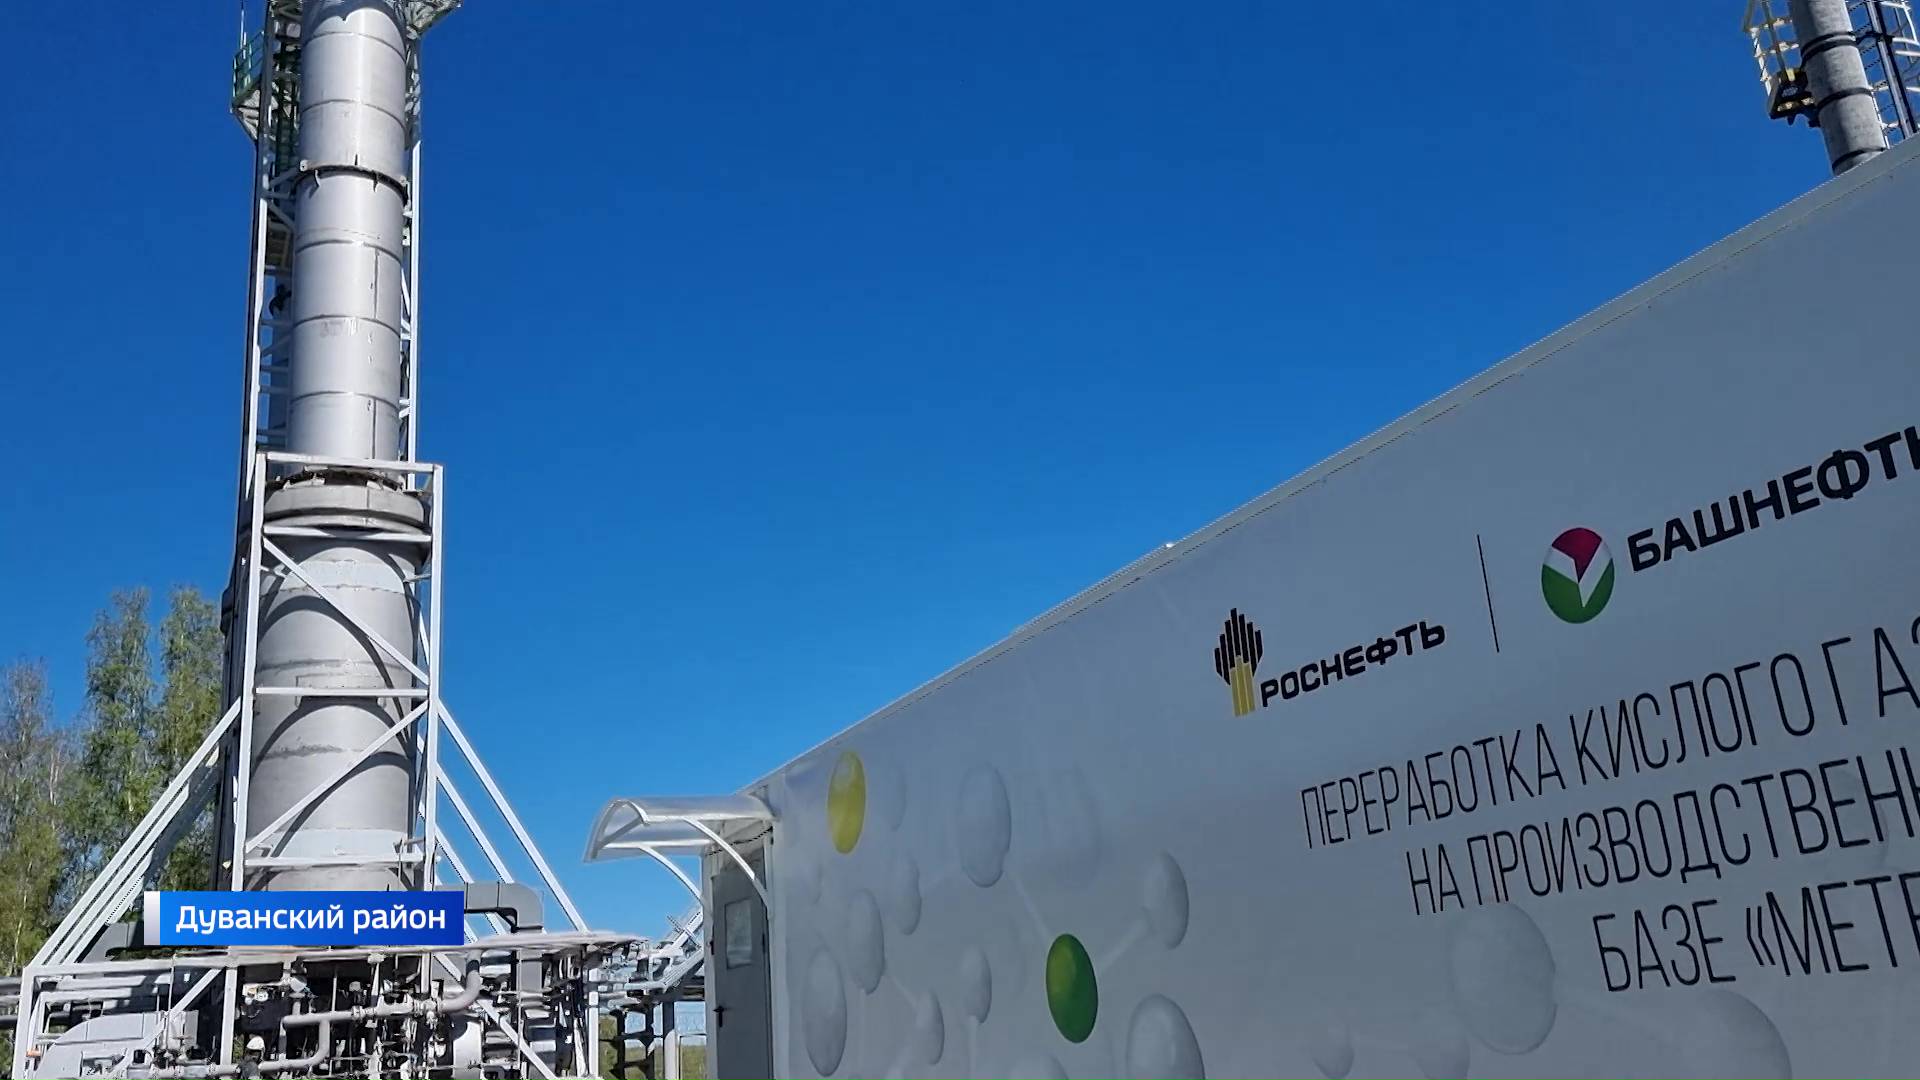 «Башнефть» запустила высокотехнологичную установку по переработке газа